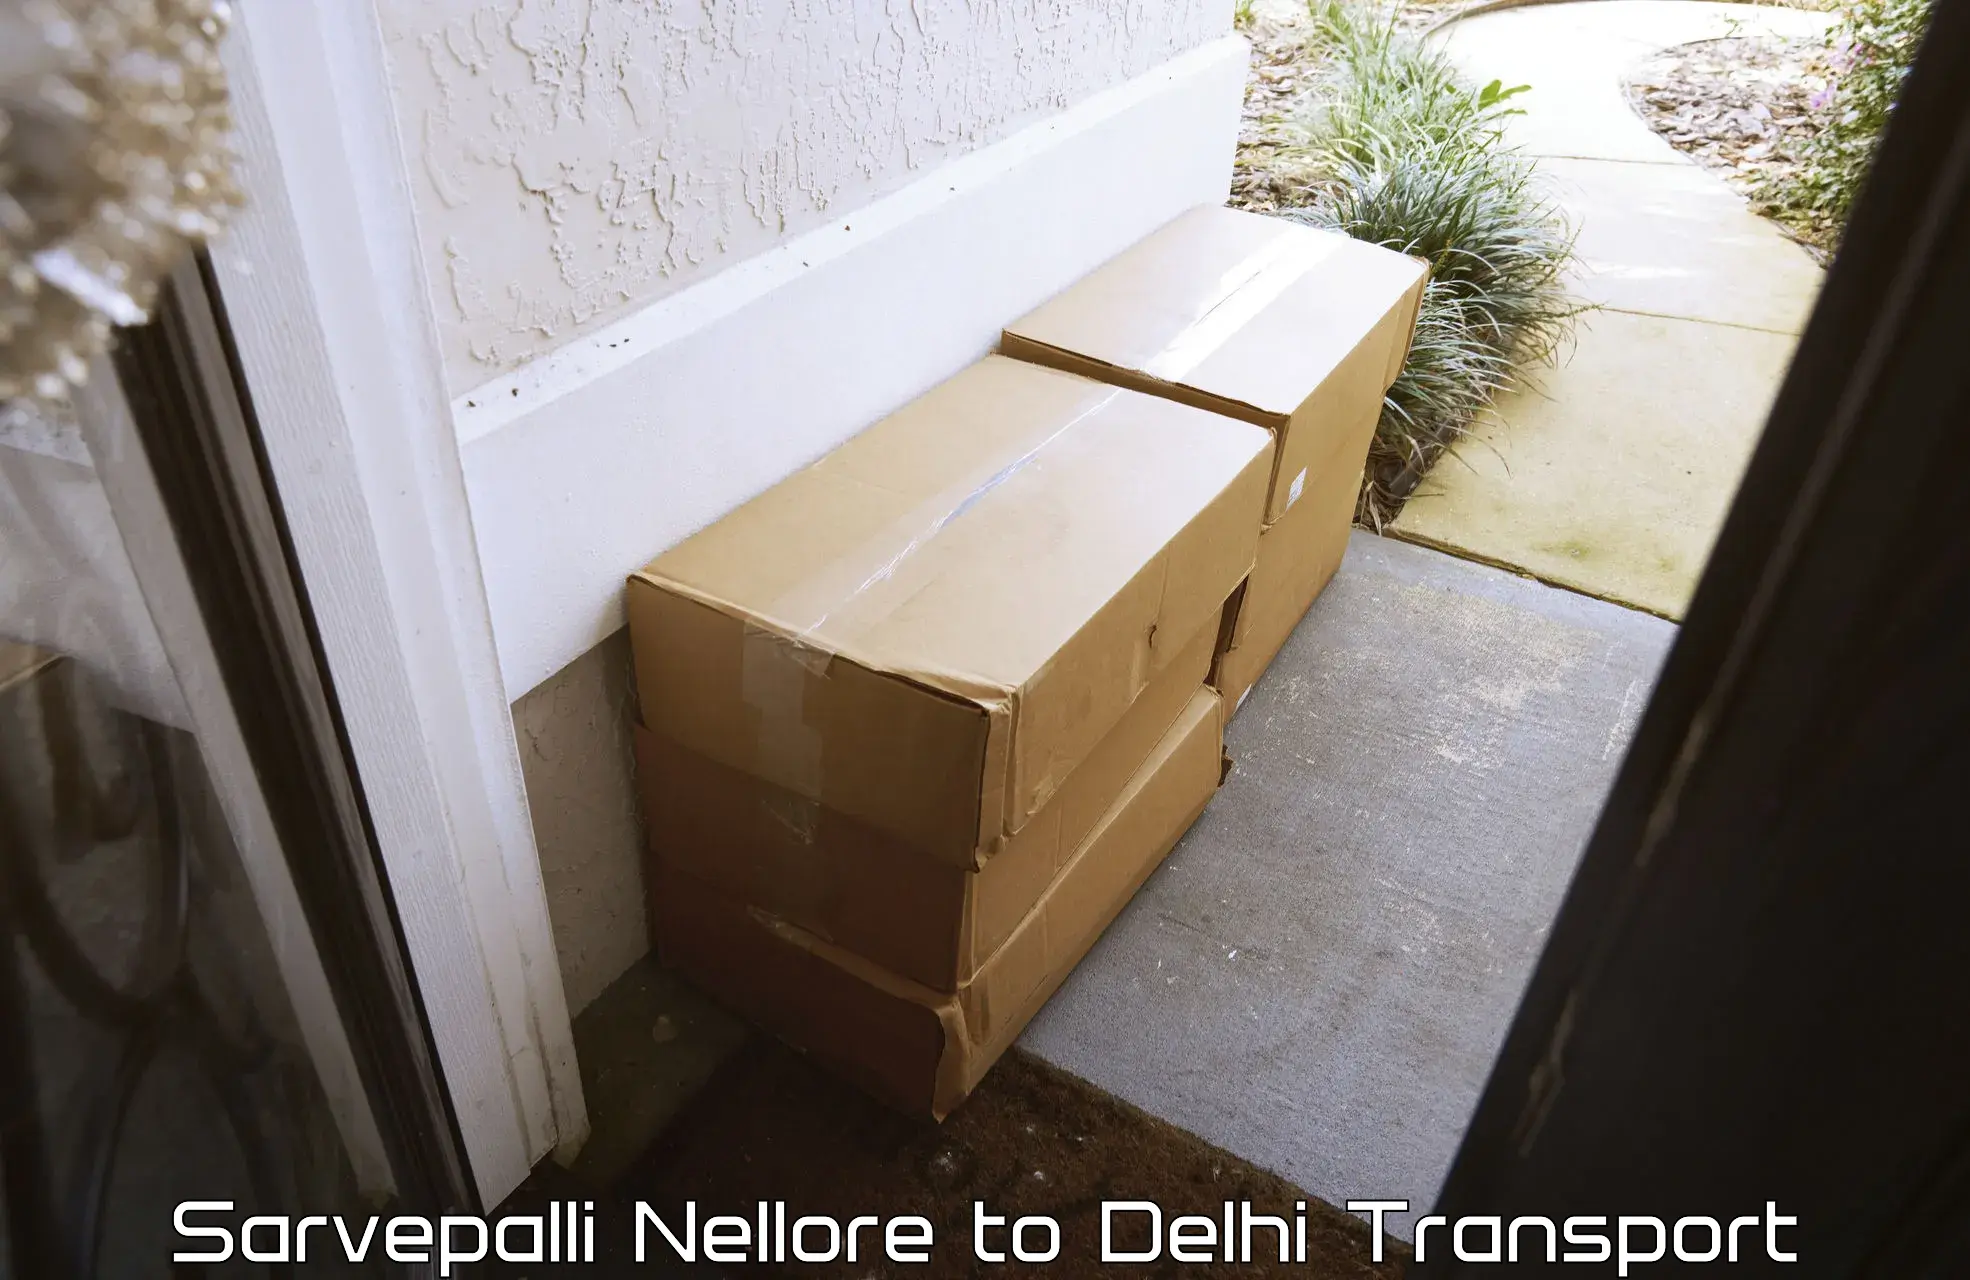 Furniture transport service Sarvepalli Nellore to East Delhi